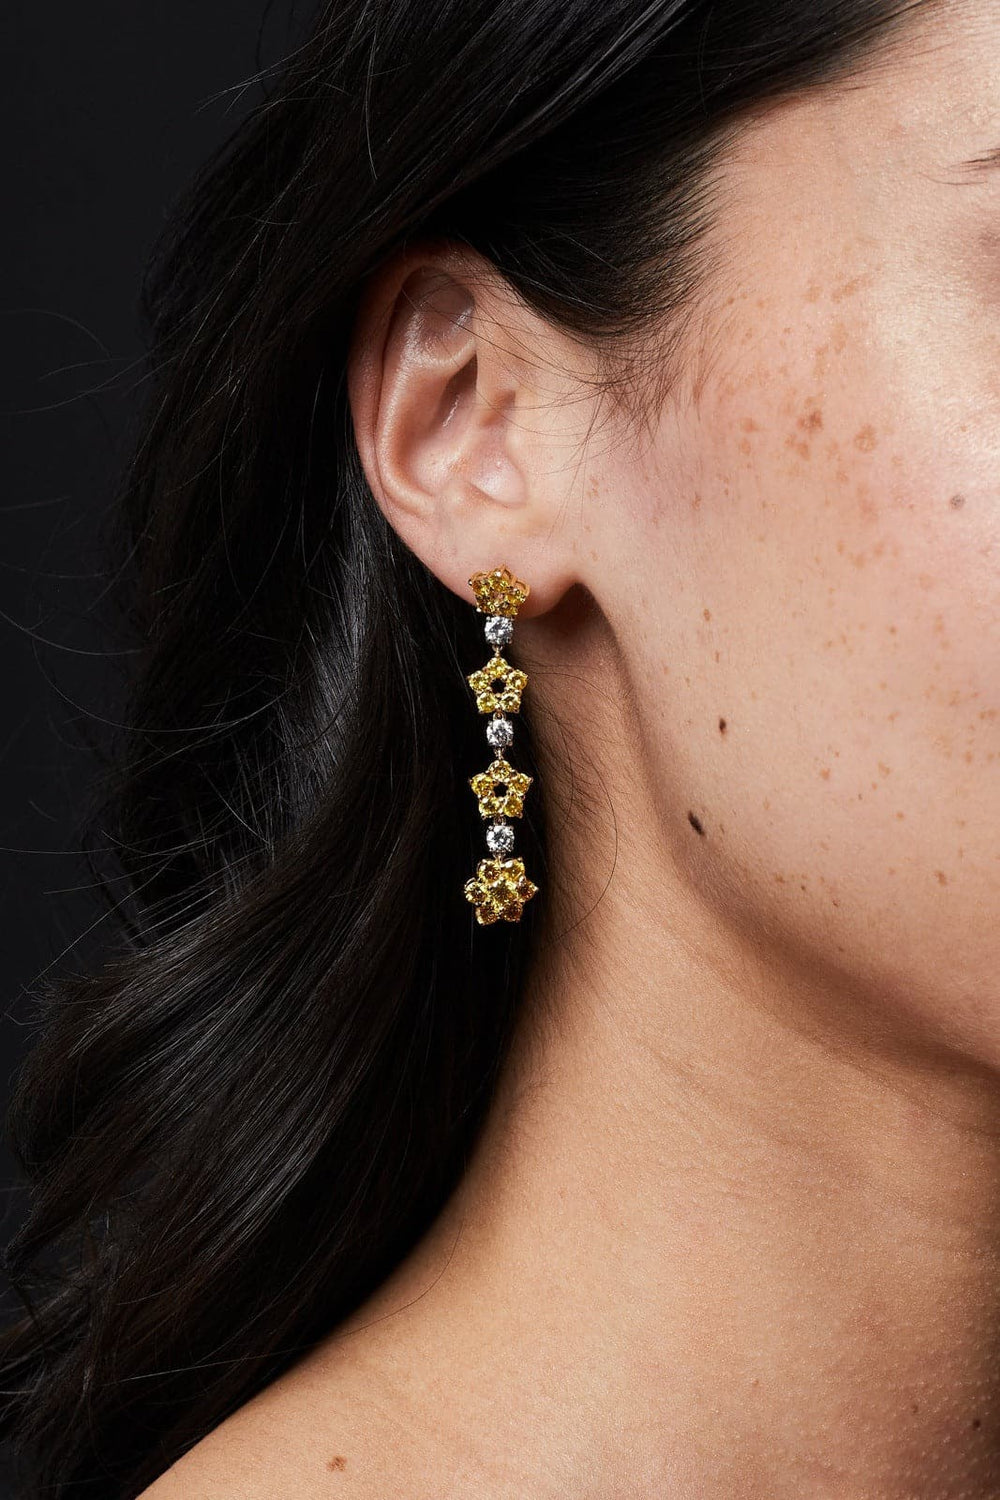 Fancy yellow vivid diamond flower earrings